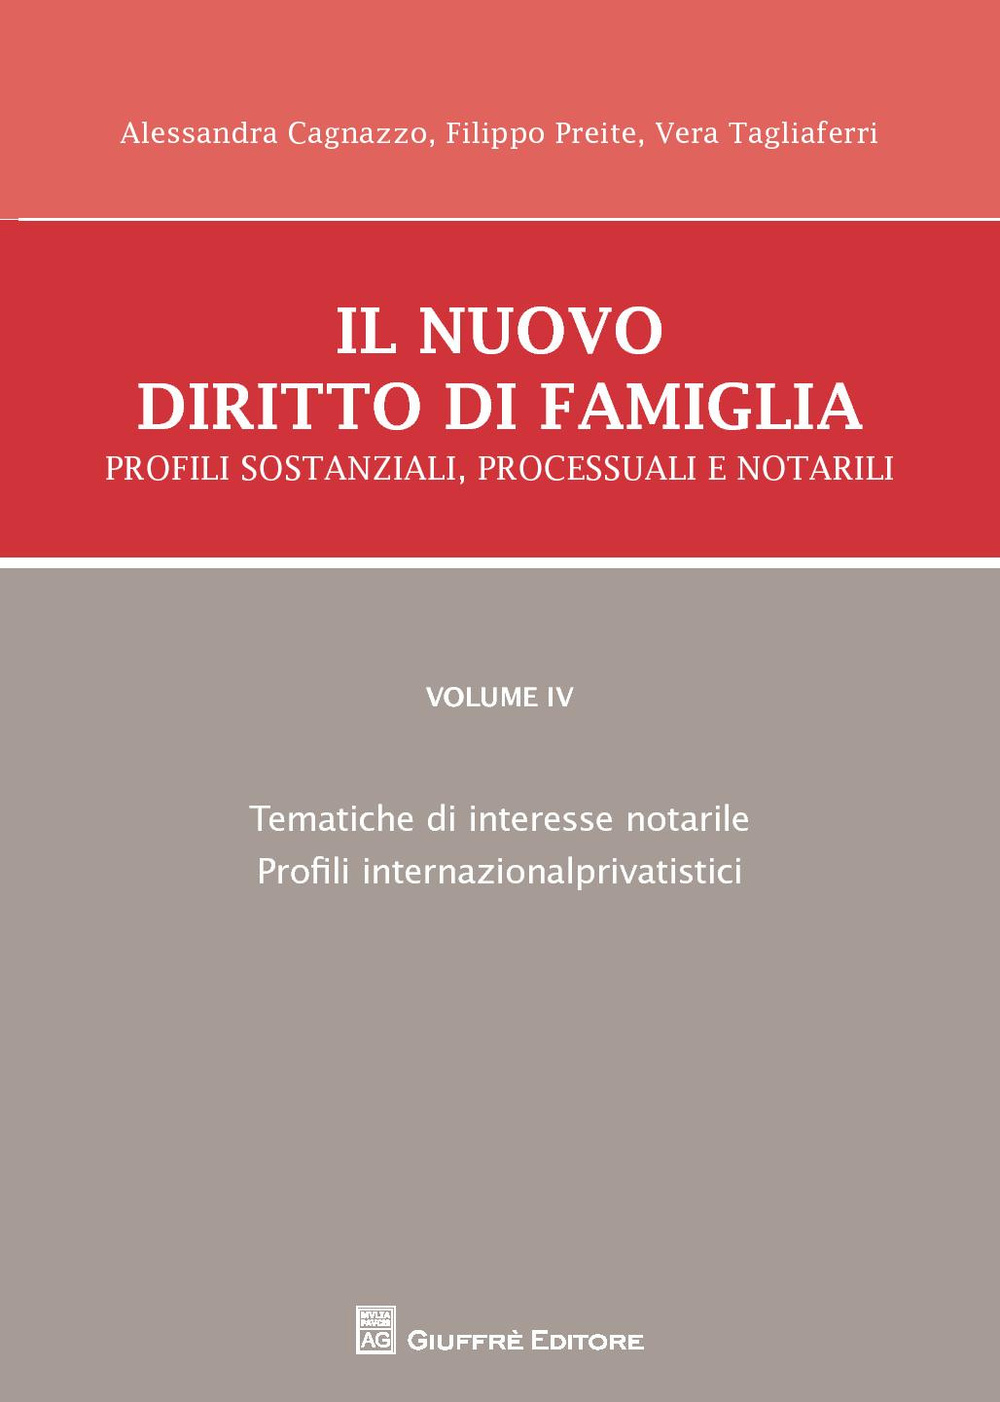 Il nuovo diritto di famiglia. Profili sostanziali, processuali e notarili. Vol. 4: Tematiche di interesse notarile, Profili internazionalprivatistici